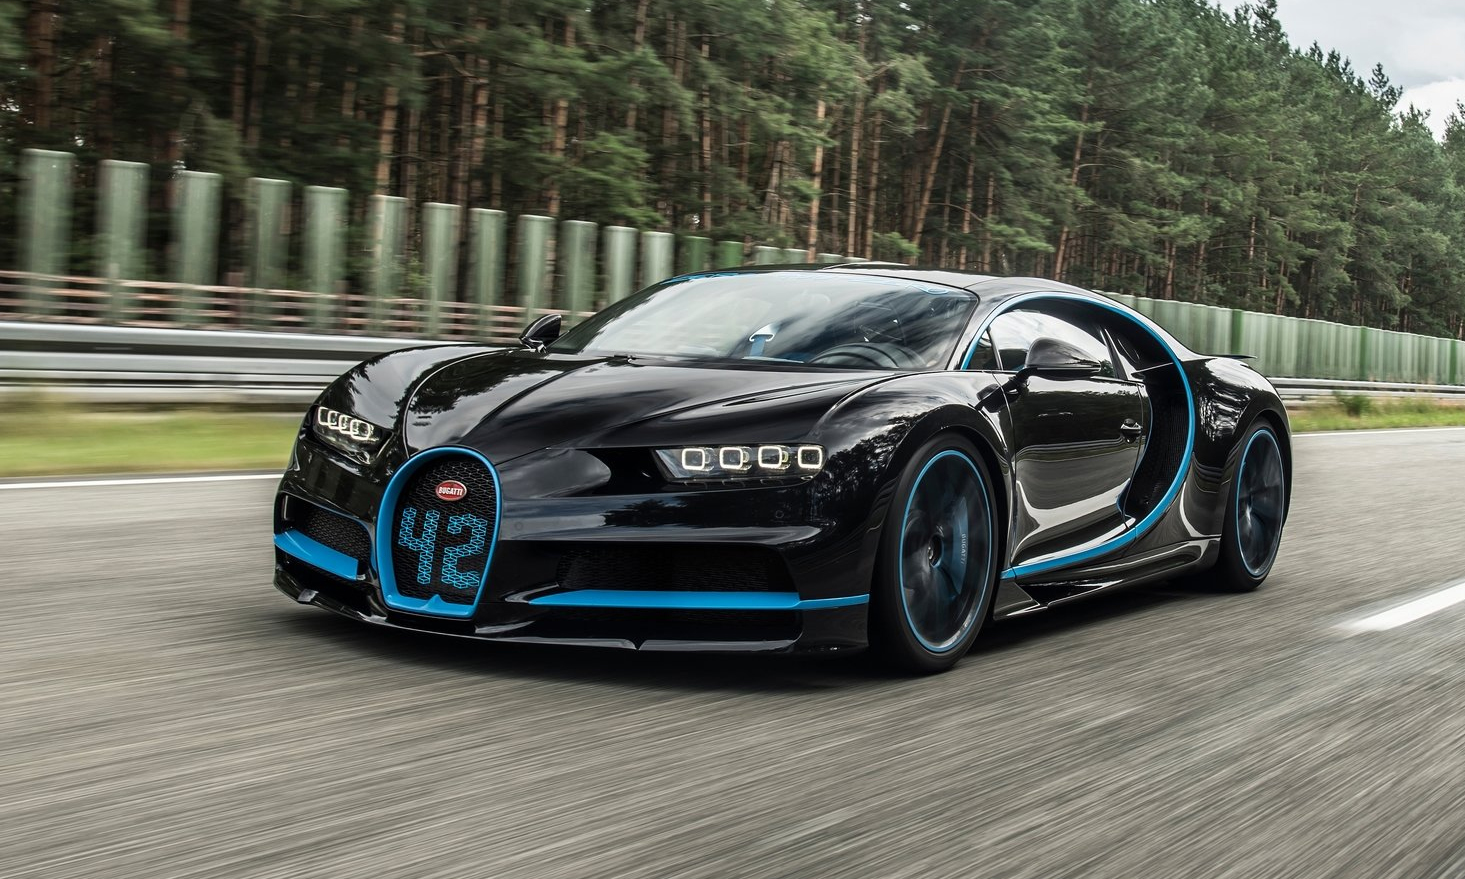 Bộ sưu tập siêu xe của CR7 - Bugatti Chiron